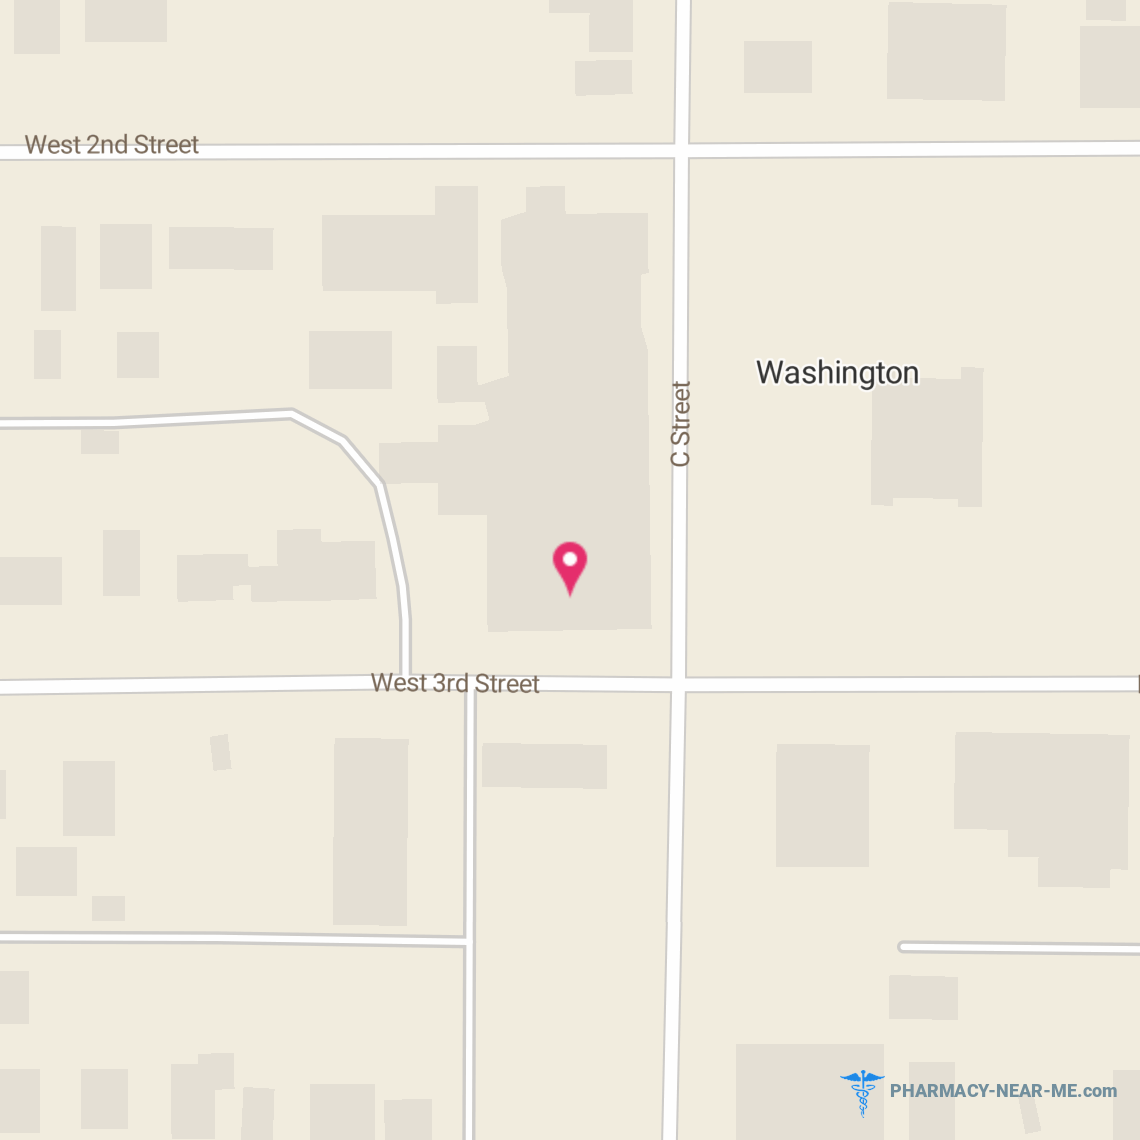 WASHINGTON PROFESSIONAL PHARMACY - Pharmacy Hours, Phone, Reviews & Information: 227 C Street, Washington, Kansas 66968, United States